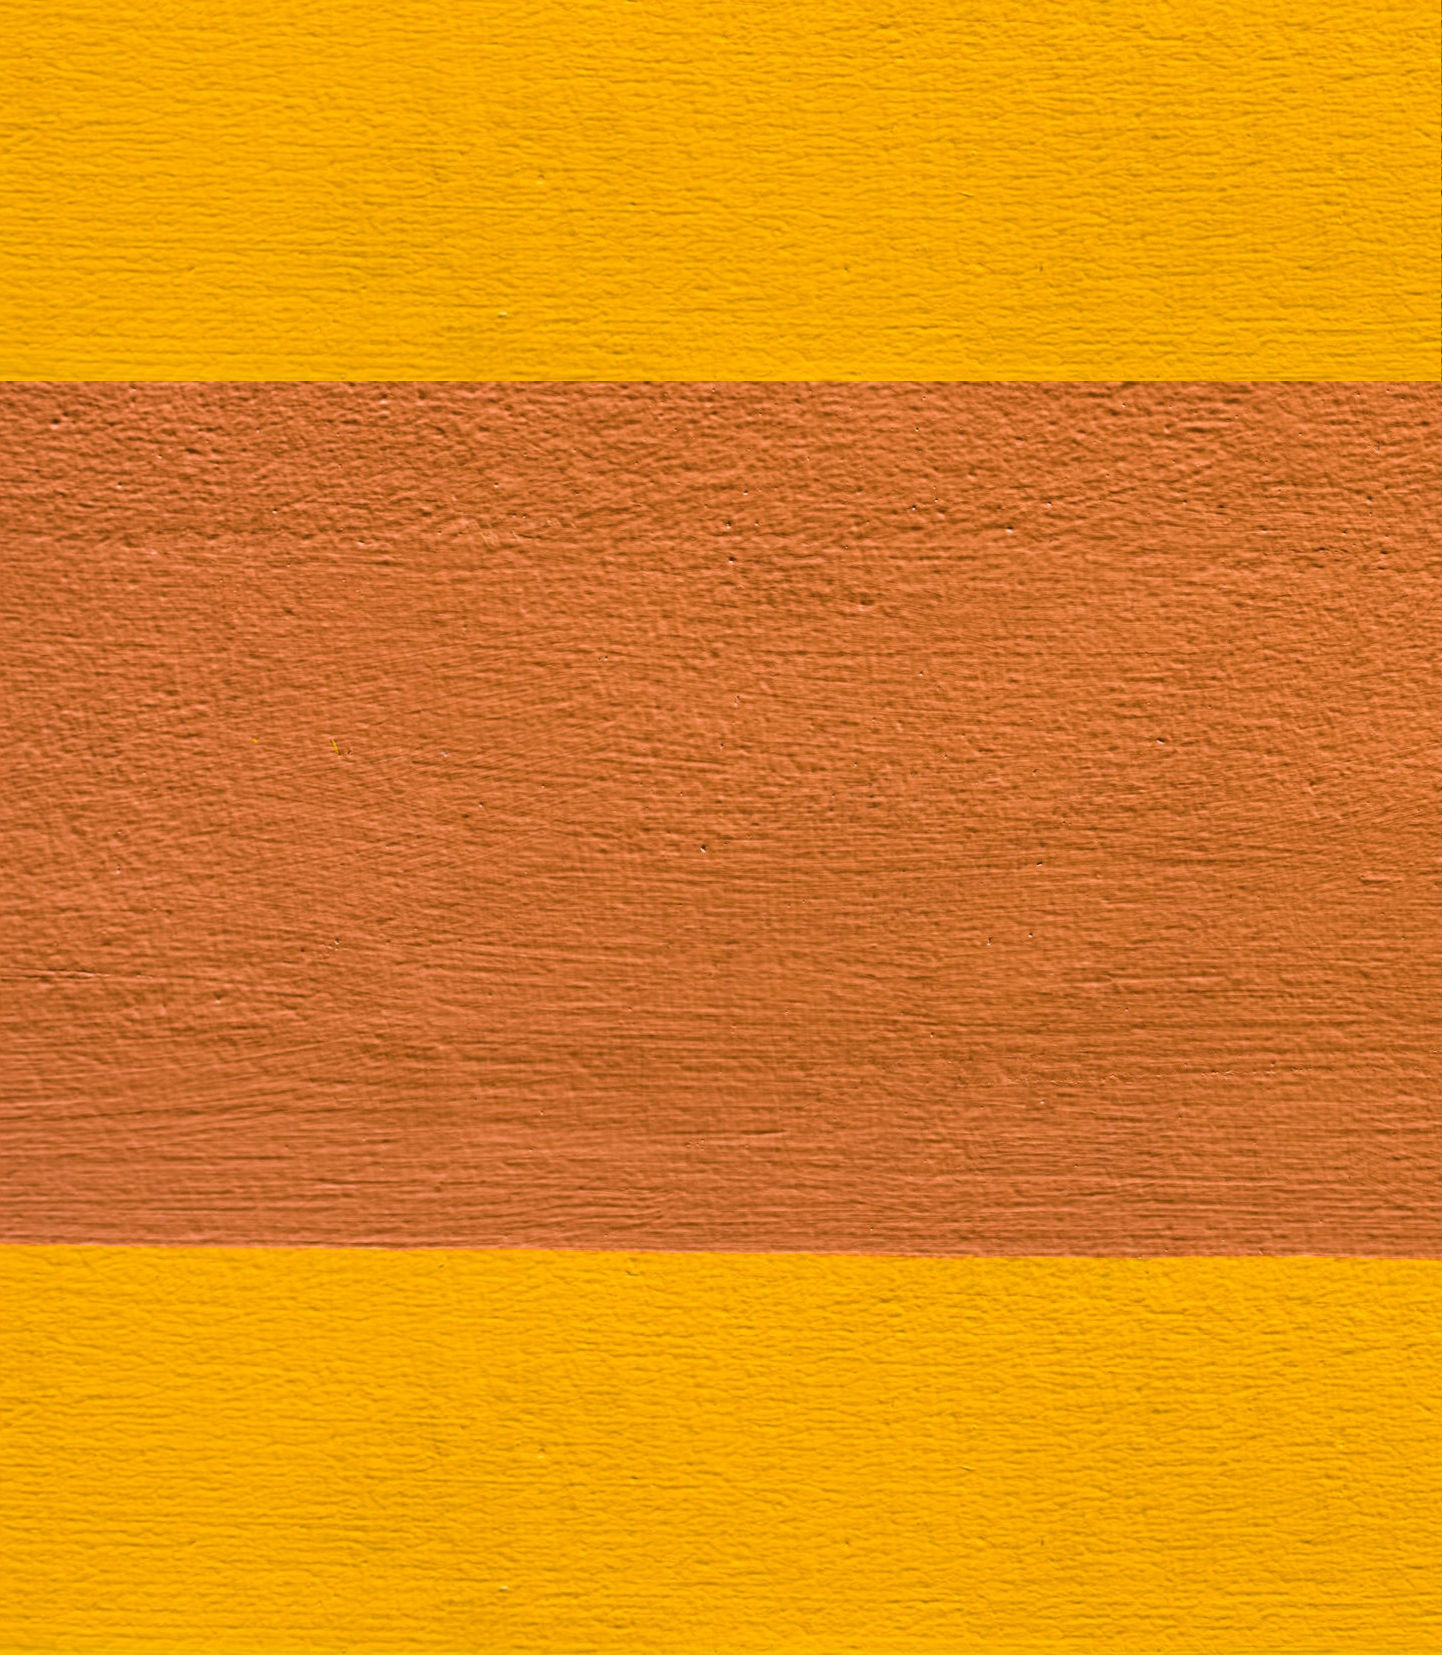 orange and yellow concrete